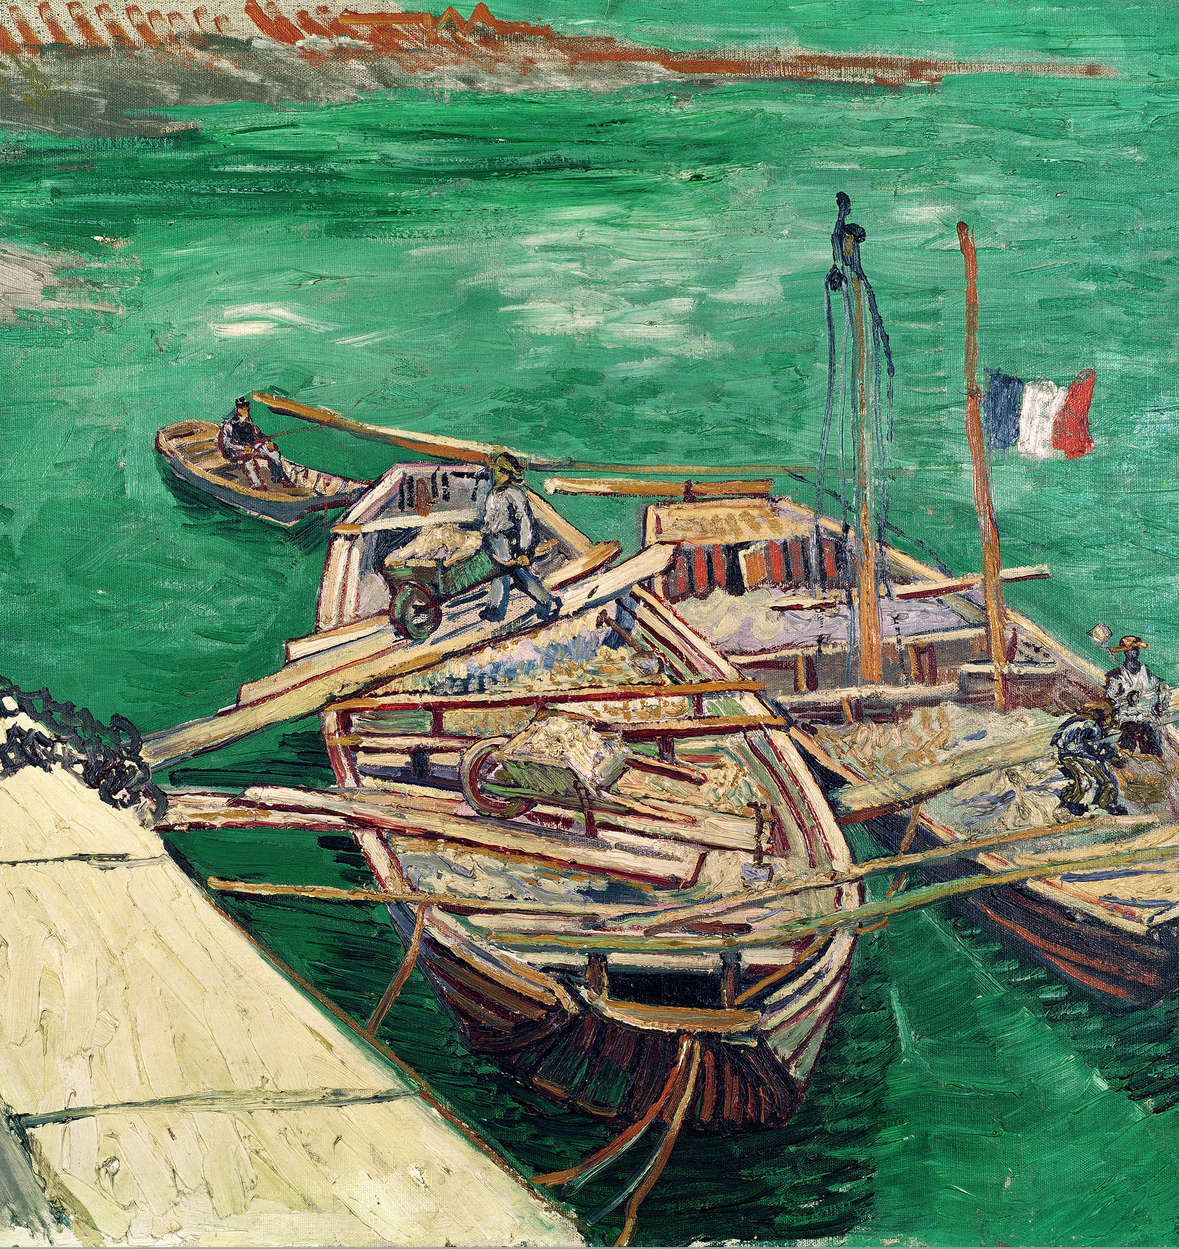             Molo di sbarco con barche", murale di Vincent van Gogh
        